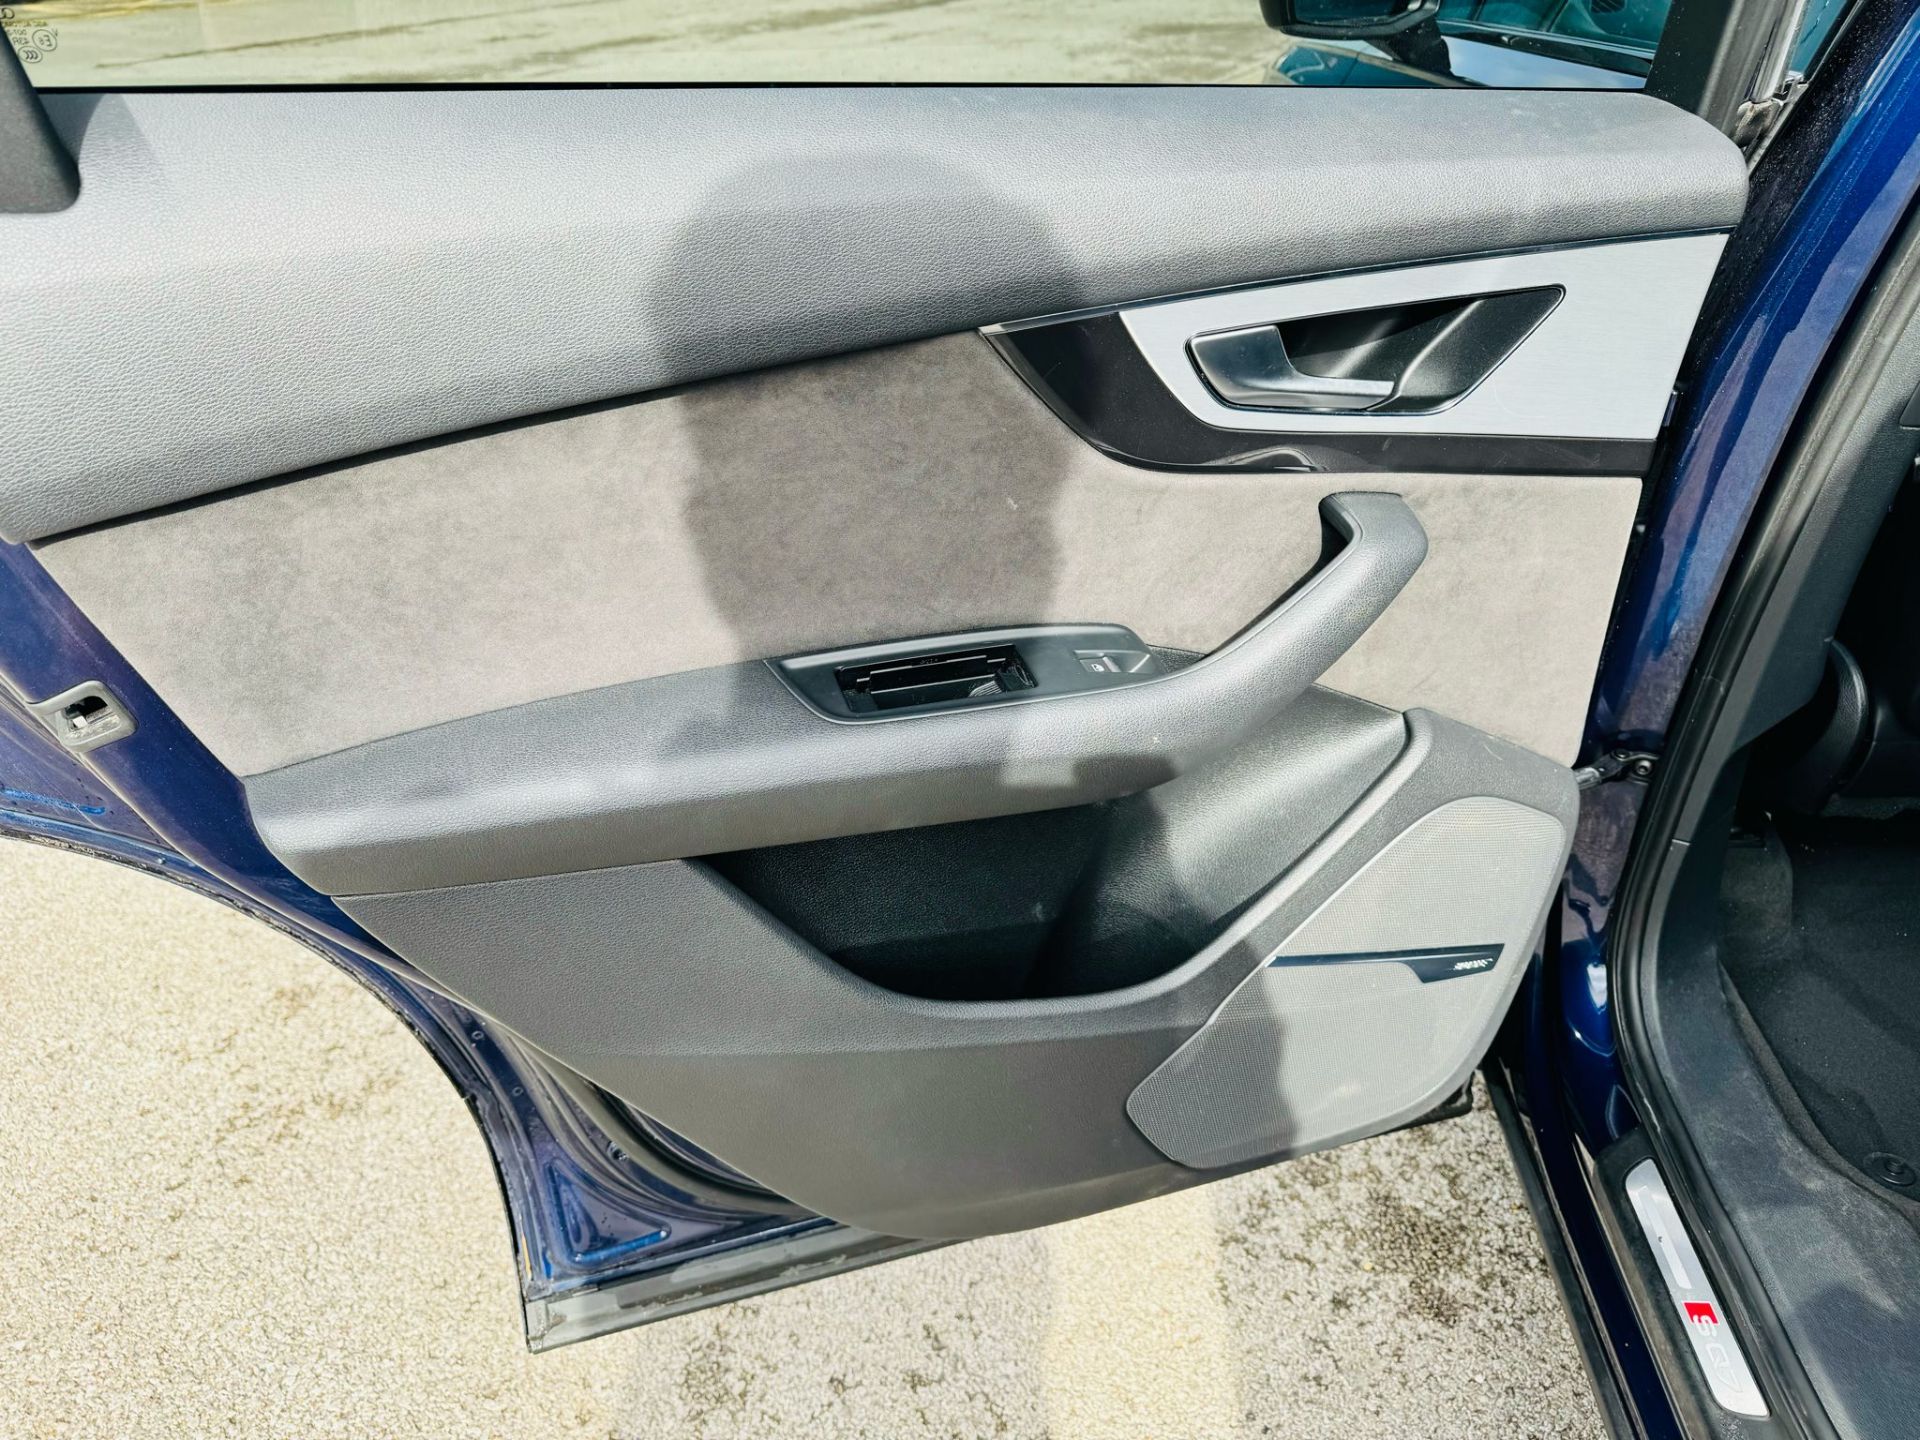 Audi SQ7 4.0TDI V8 Quattro 430BHP "SQ7 EDITION" Auto (7 Seats) 2018 18Reg -Sat Nav -Reversing camera - Image 32 of 38